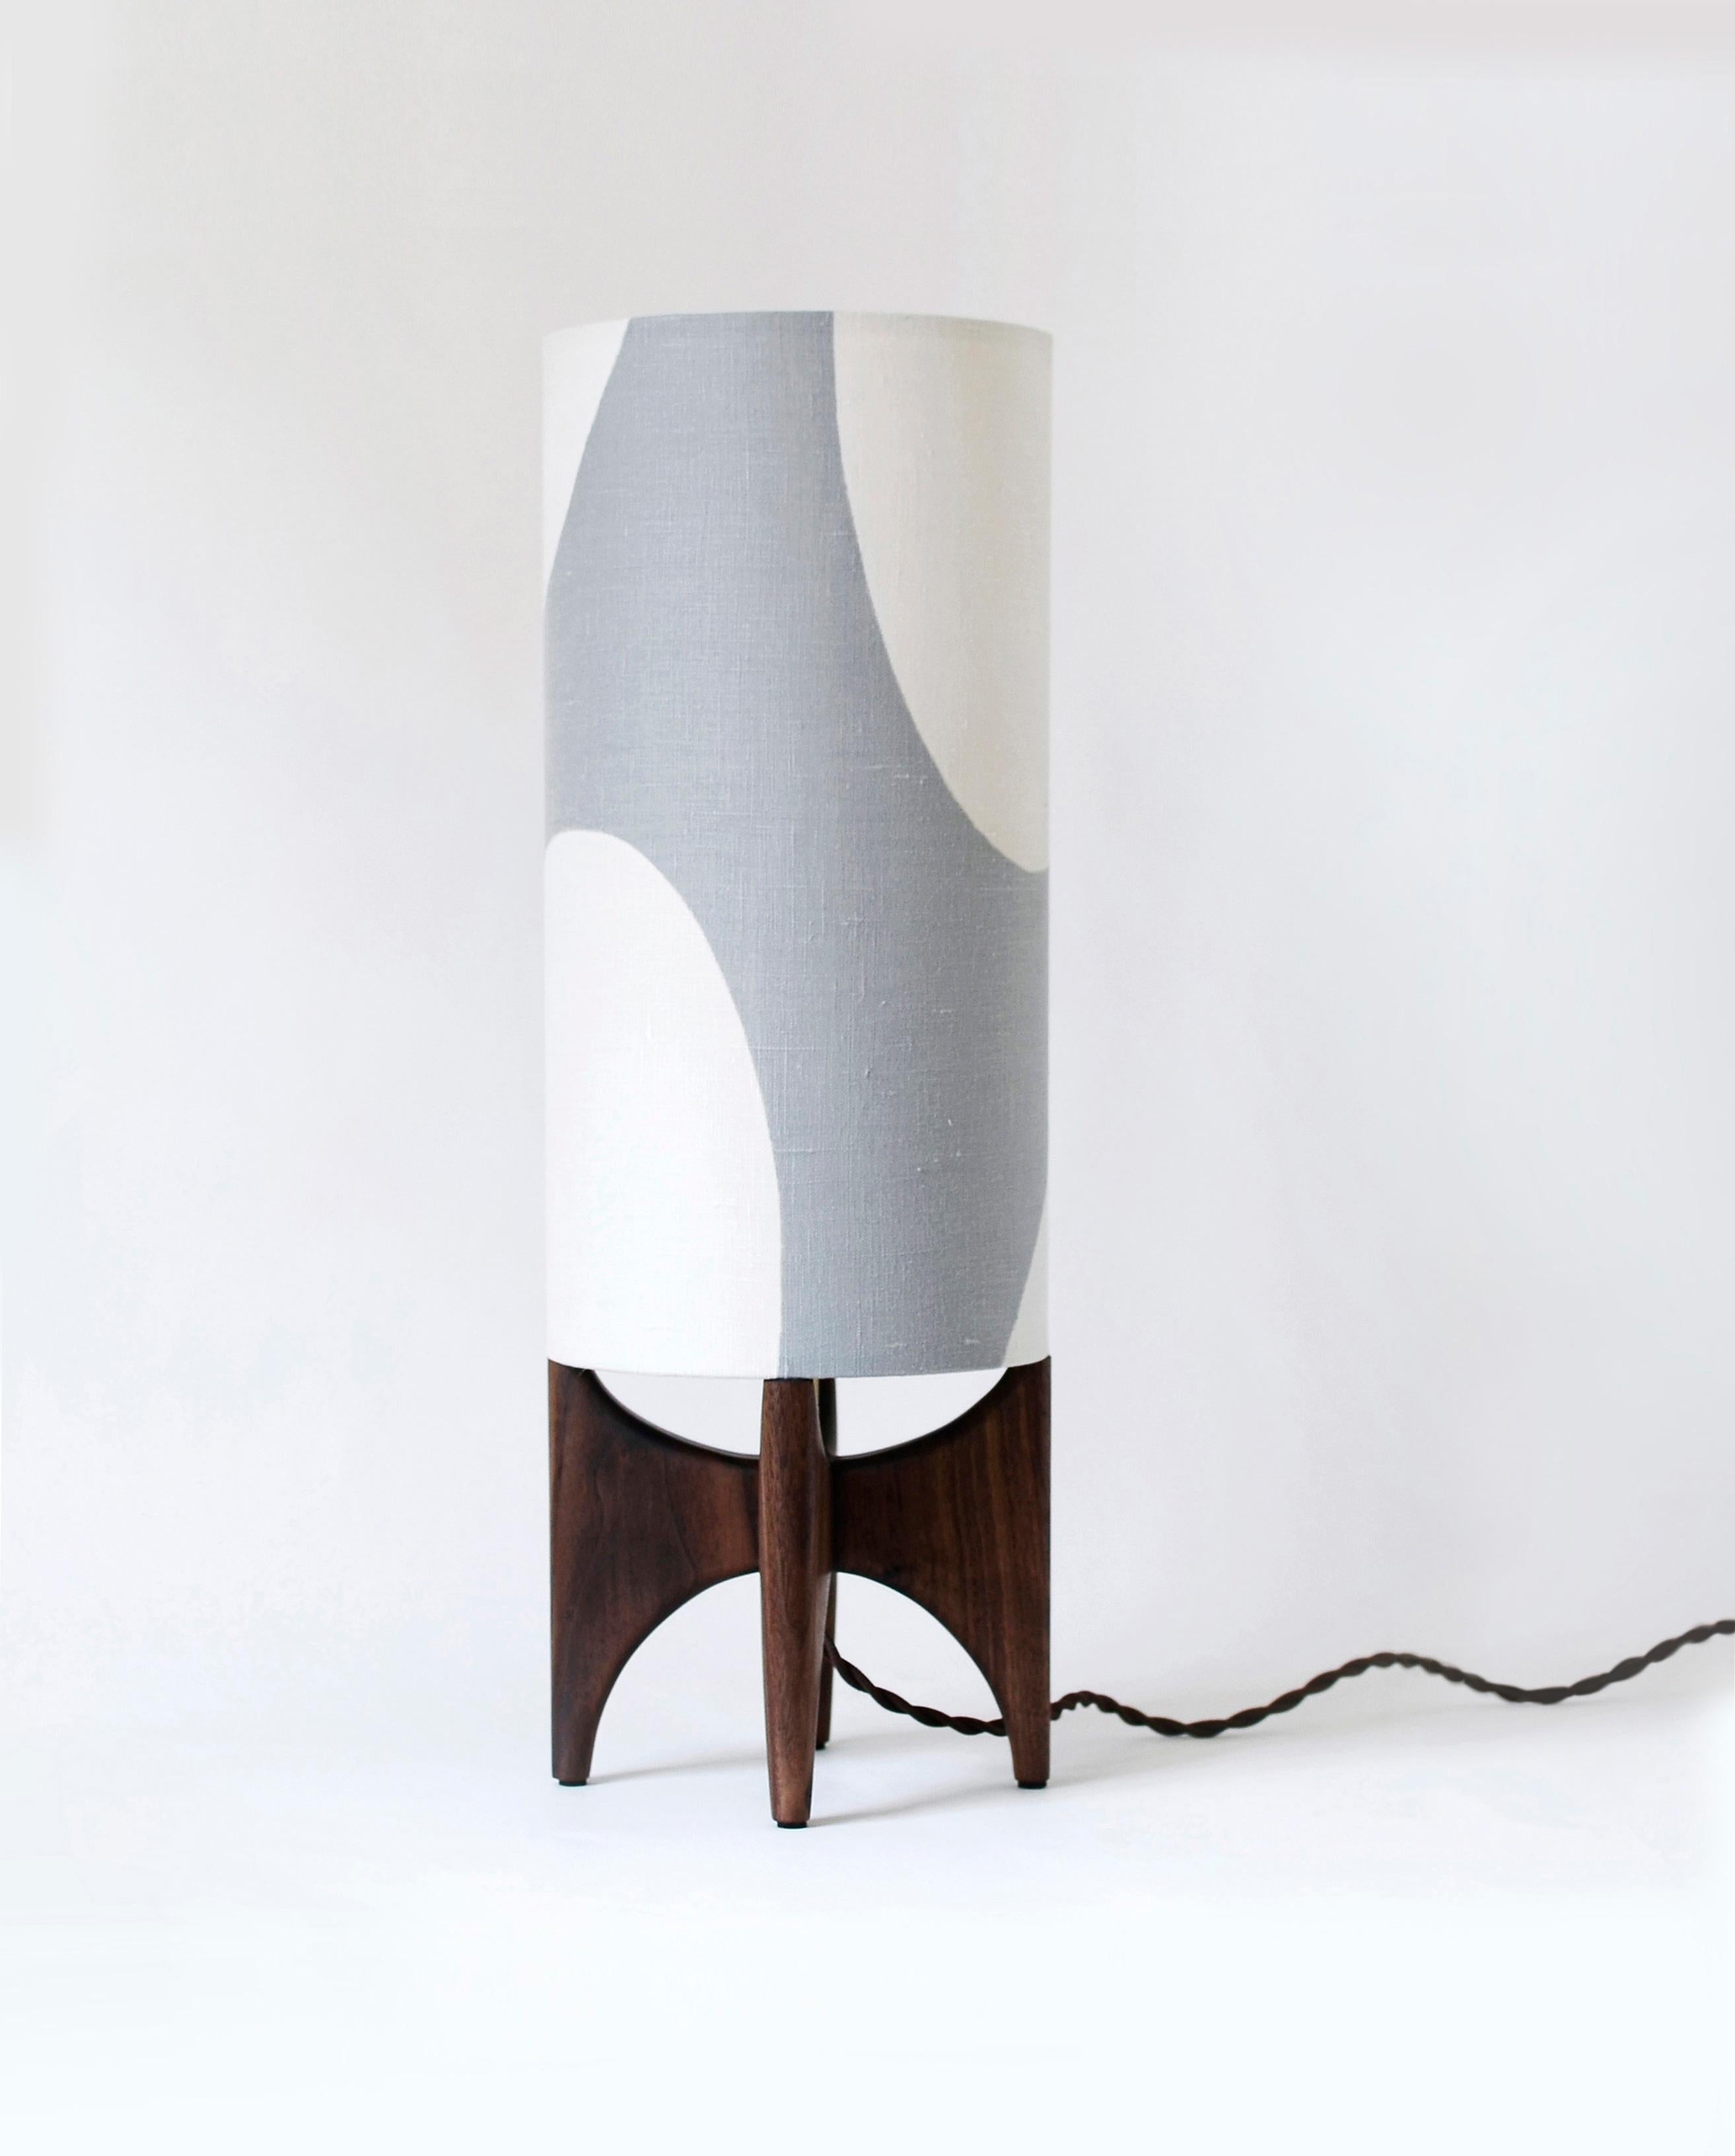 De style moderne, cette lampe de table combine des formes épurées et curvilignes pour créer une pièce unique. Notre collection Luma joue avec des formes simples, explorant l'espace positif et négatif pour créer un abat-jour unique et moderne,